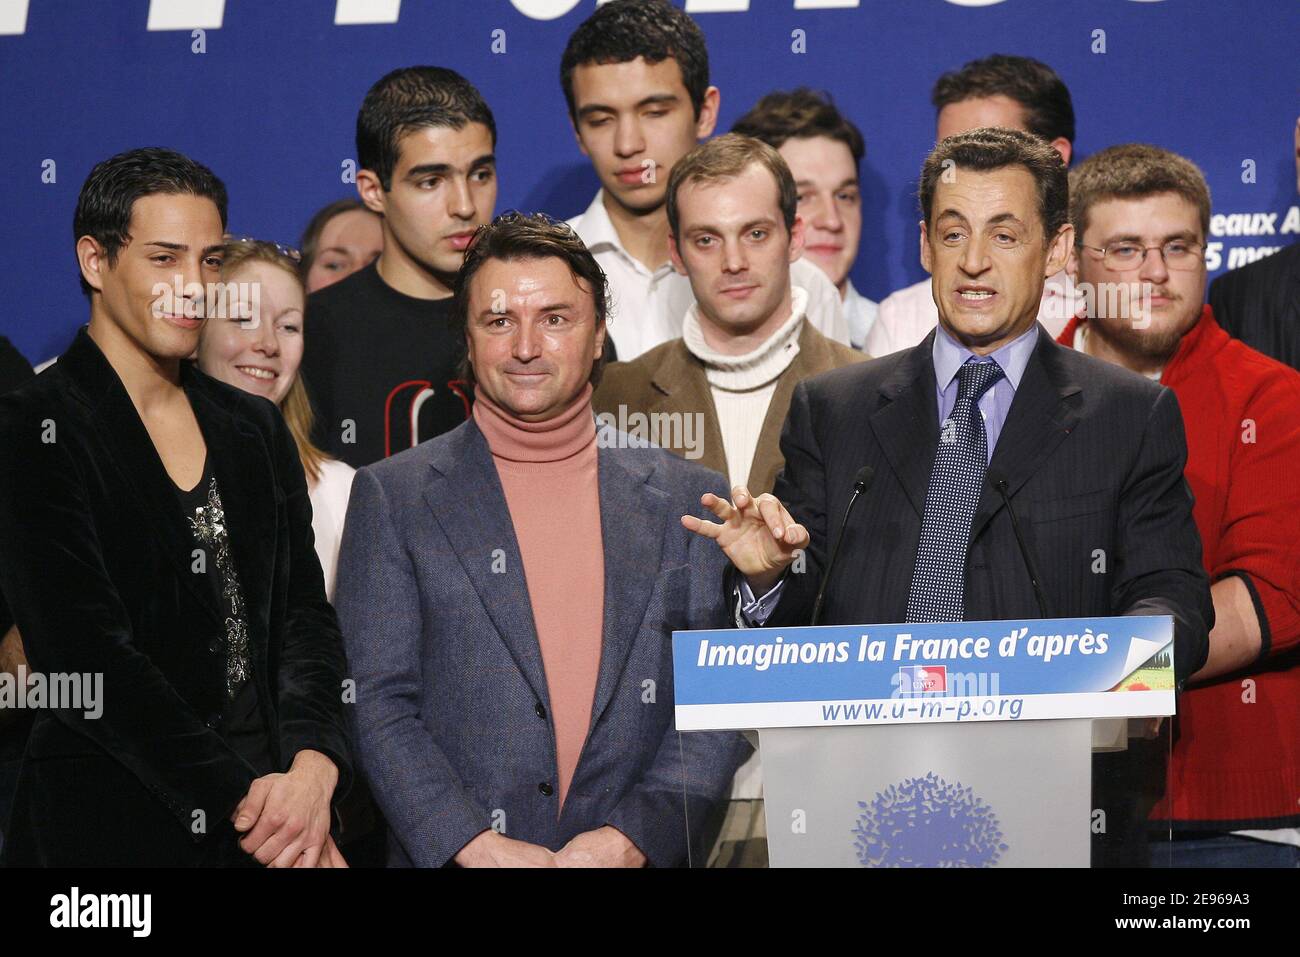 Le ministre français de l'intérieur et chef de l'UMP, Nicolas Sarkozy, vu ici avec le candidat à la télé-réalité Steevy Boulay et l'ancien pilote de F1 René Arnoux, s'adresse à une foule de nouveaux membres de l'UMP lors d'une réunion tenue à la salle Gaveau à Paris, le 25 mars 2006. Sarkozy a exhorté le gouvernement à trouver un compromis pour désamorcer une crise liée à une nouvelle loi sur le travail des jeunes qui a déclenché des manifestations de masse et des émeutes sporadiques. Le candidat auto-déclaré aux élections présidentielles de 2007 a exprimé sa compréhension pour les jeunes manifestants. Photo de Mehdi Taamallah/ABACAPRESS.COM Banque D'Images